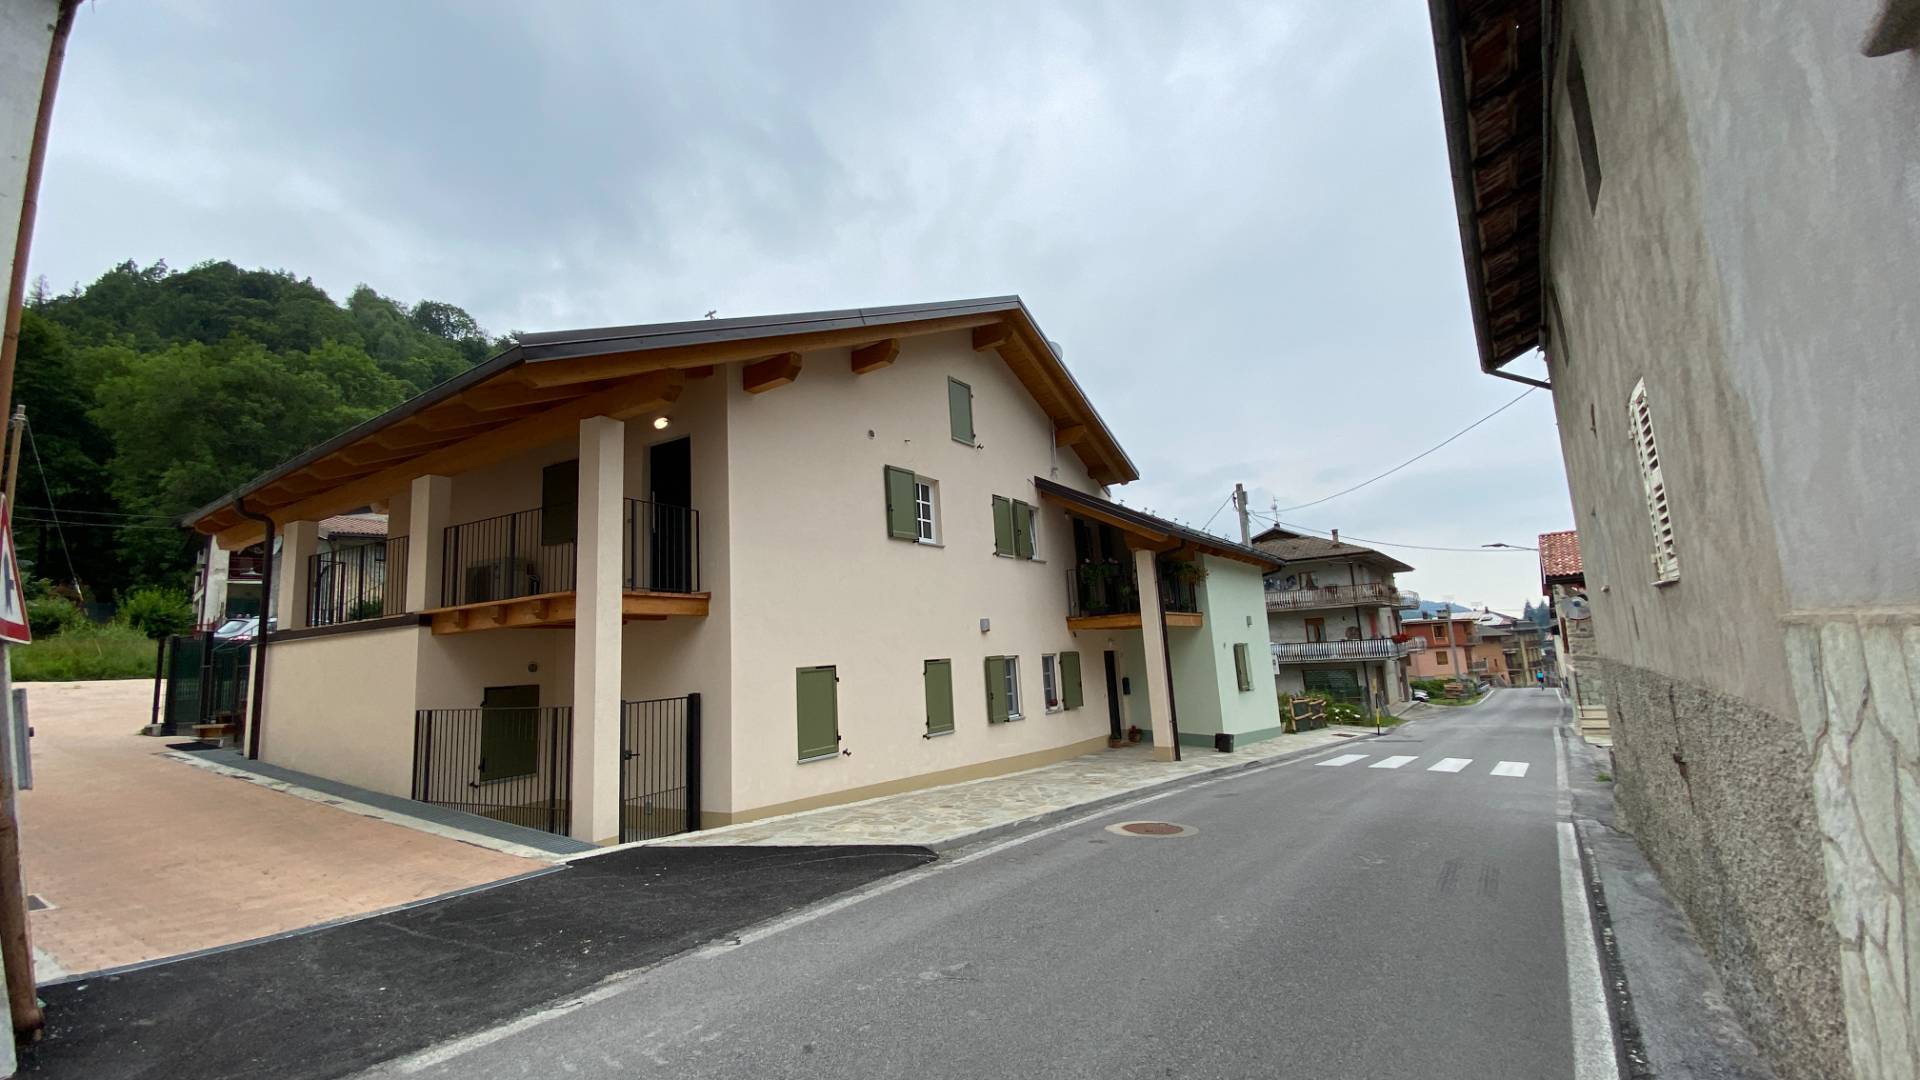 Appartamento in vendita a Chiusa di Pesio, 2 locali, prezzo € 60.000 | PortaleAgenzieImmobiliari.it